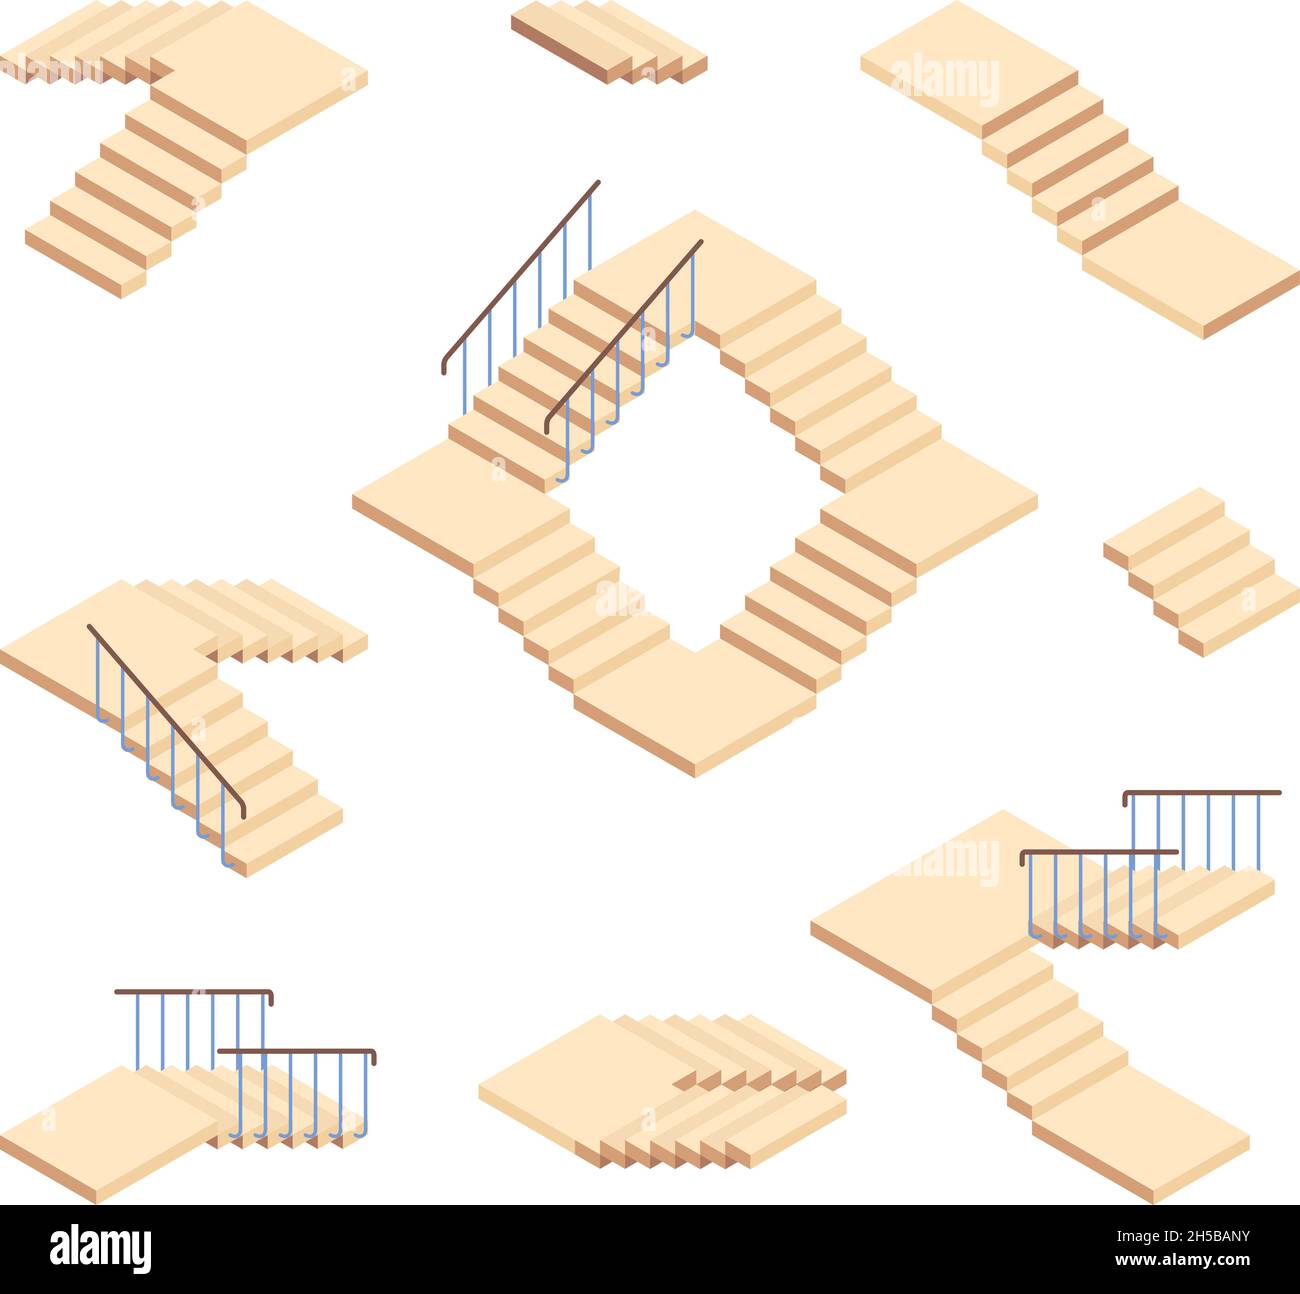 Treppen isometrisch. Außentreppe für Häuser Konstruktionen Vektor-Set Stock Vektor